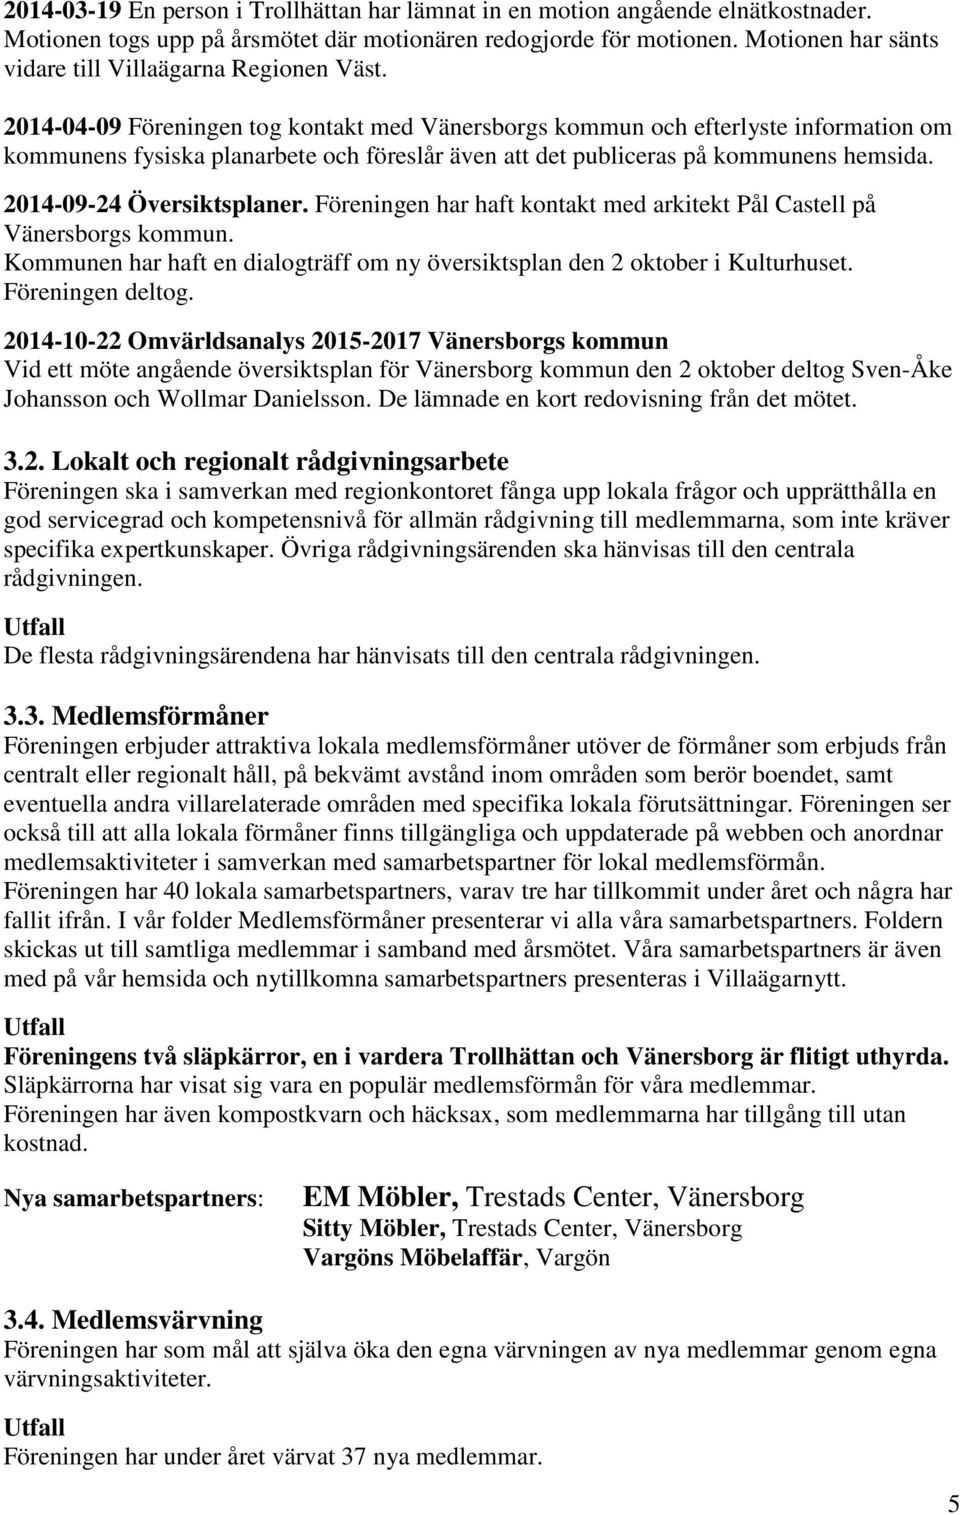 2014-04-09 Föreningen tog kontakt med Vänersborgs kommun och efterlyste information om kommunens fysiska planarbete och föreslår även att det publiceras på kommunens hemsida.